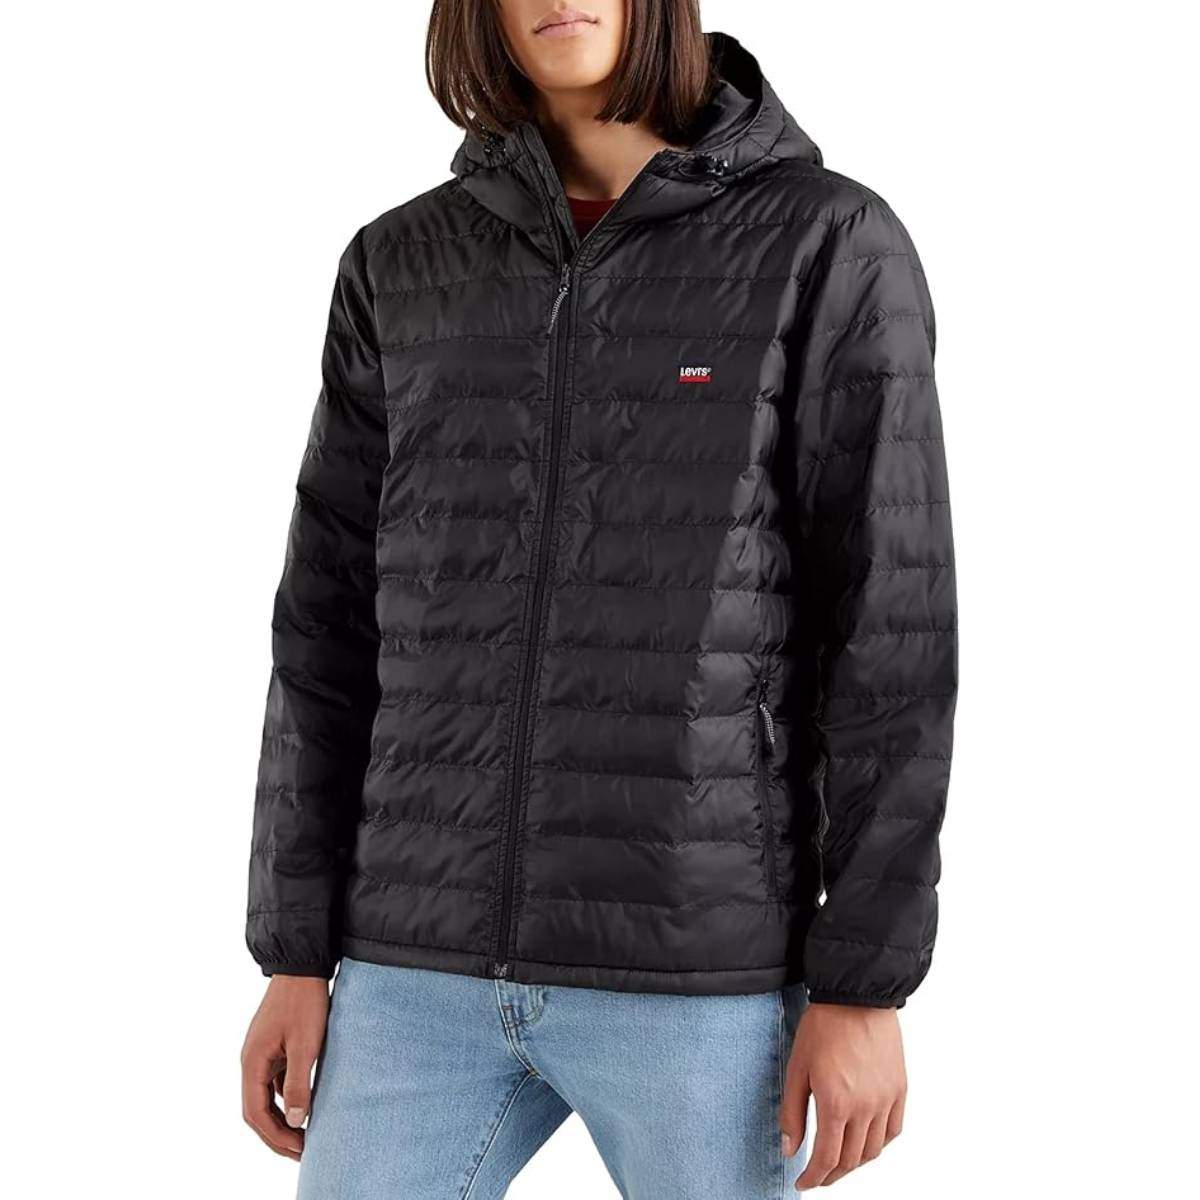 Amazon té la jaqueta Levi's perfecta per a l'hivern suau que estem vivint, al 50% del seu cost!